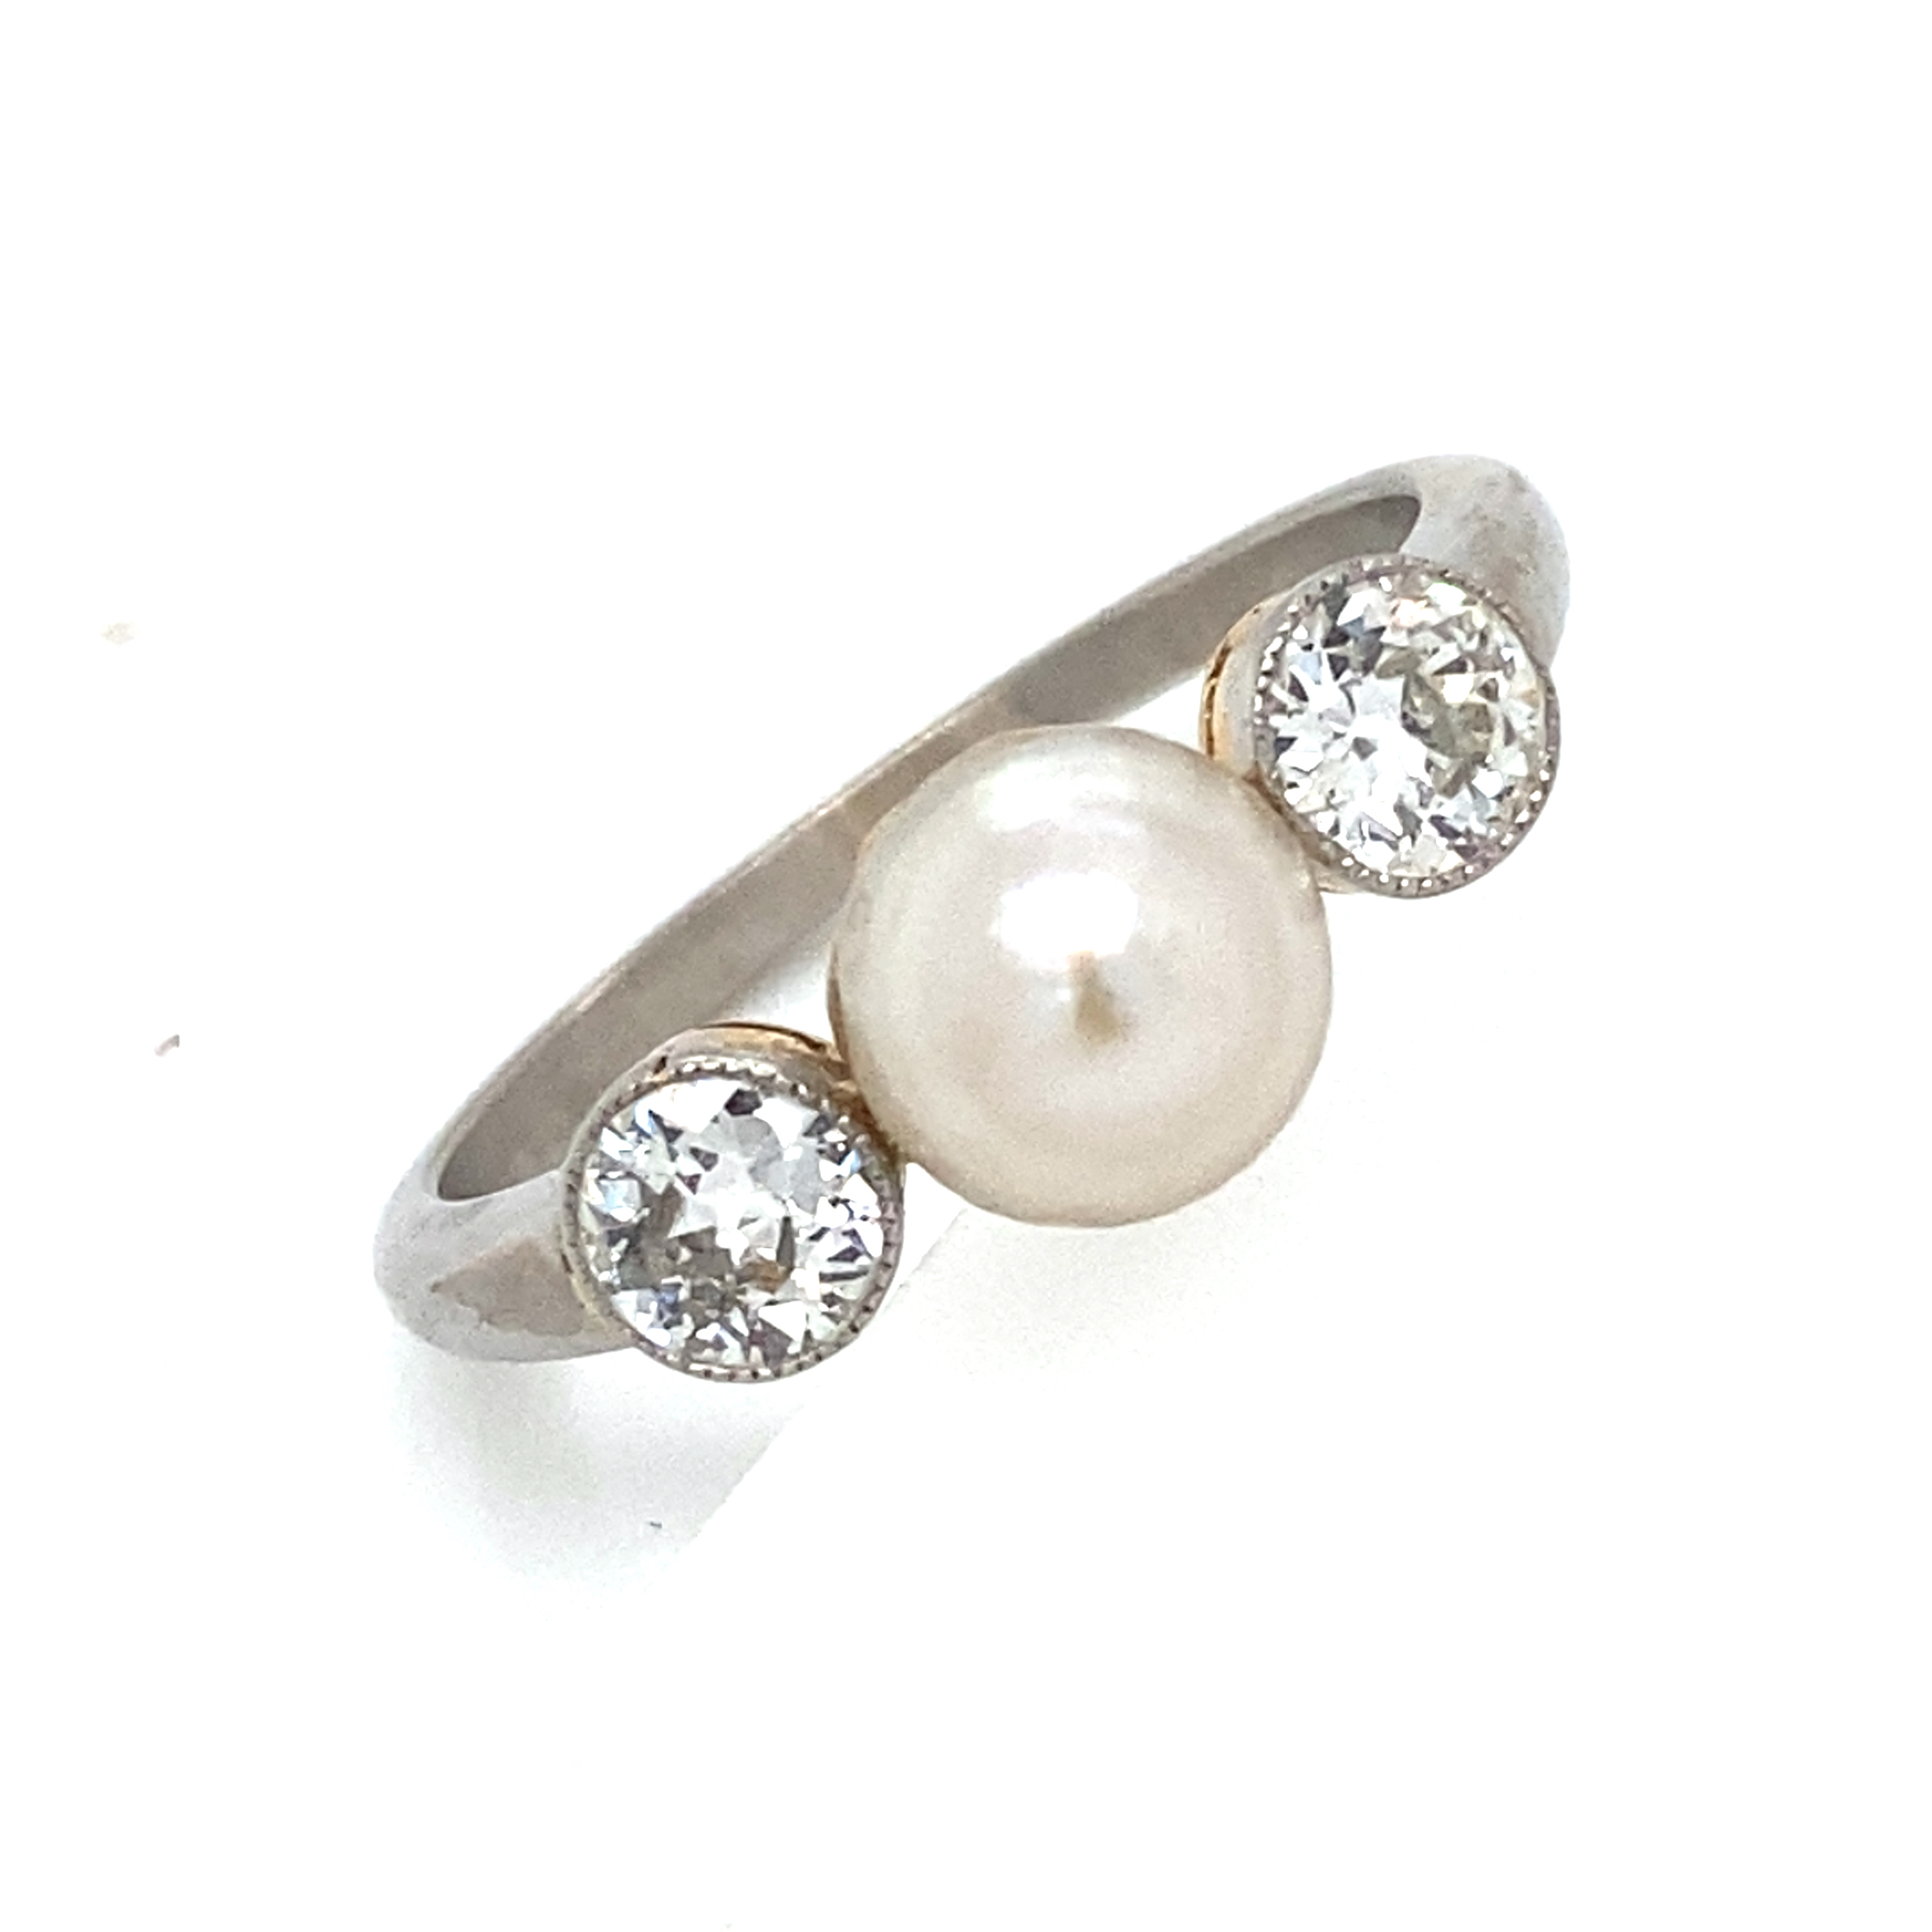 Natural Pearl and Diamond Ring Circa 1920